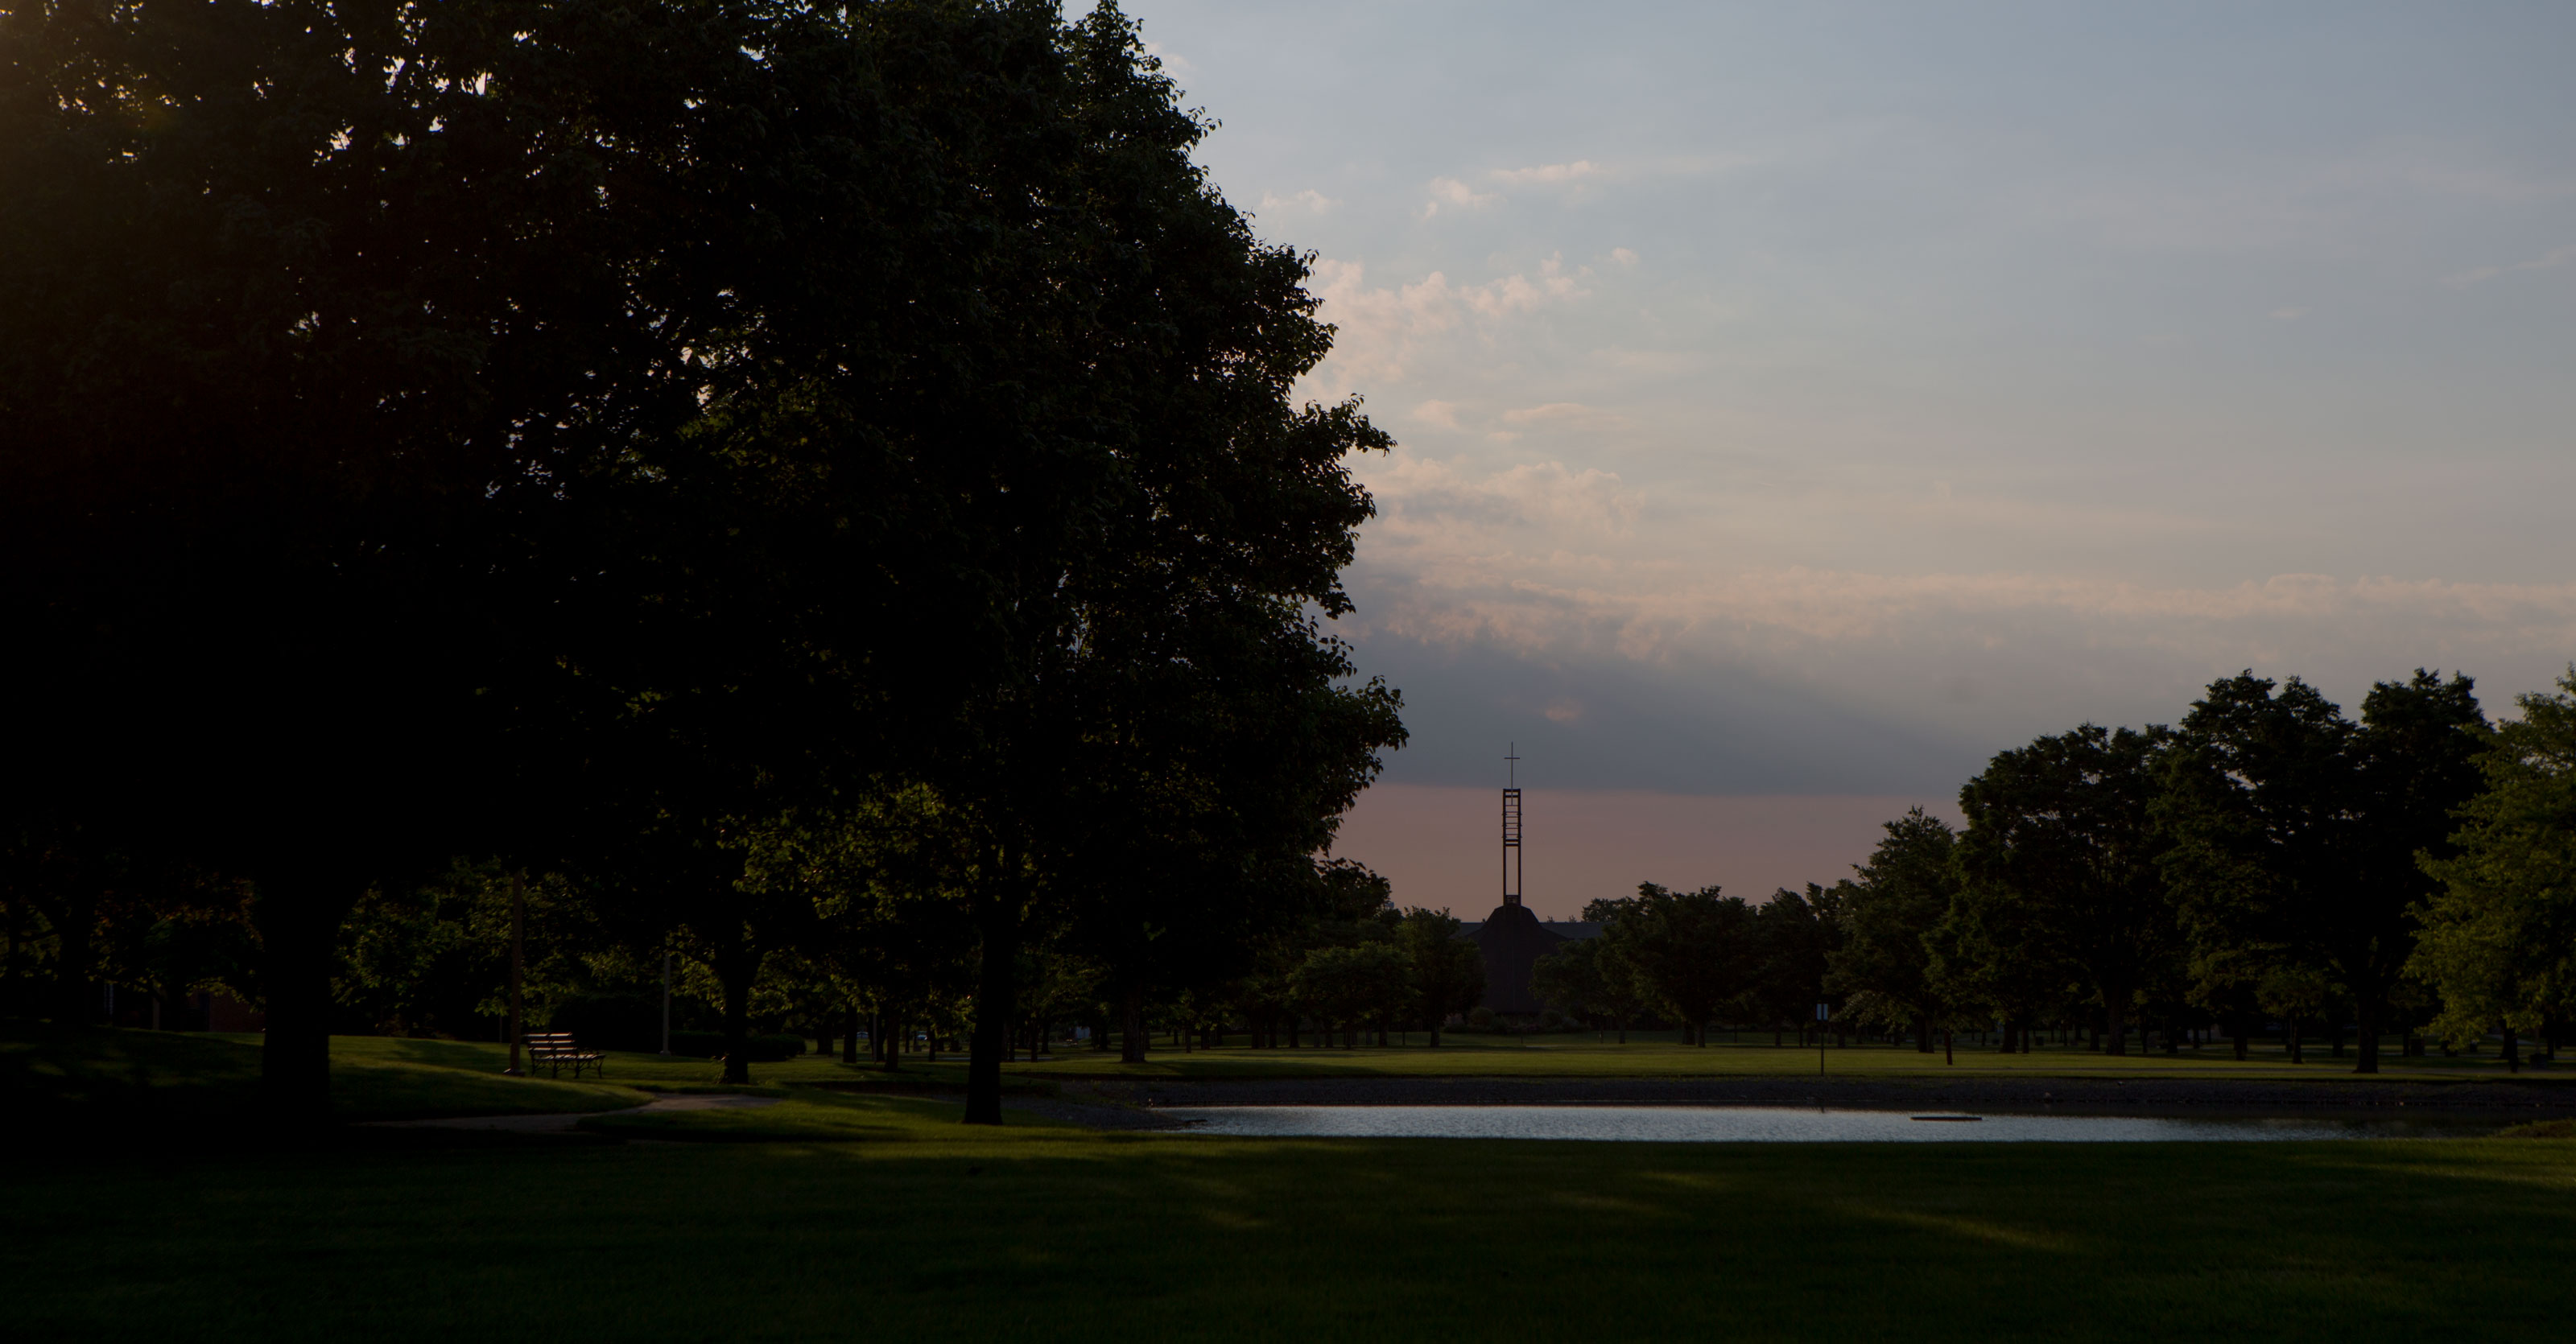 Sunset on campus at Ohio Northern University.